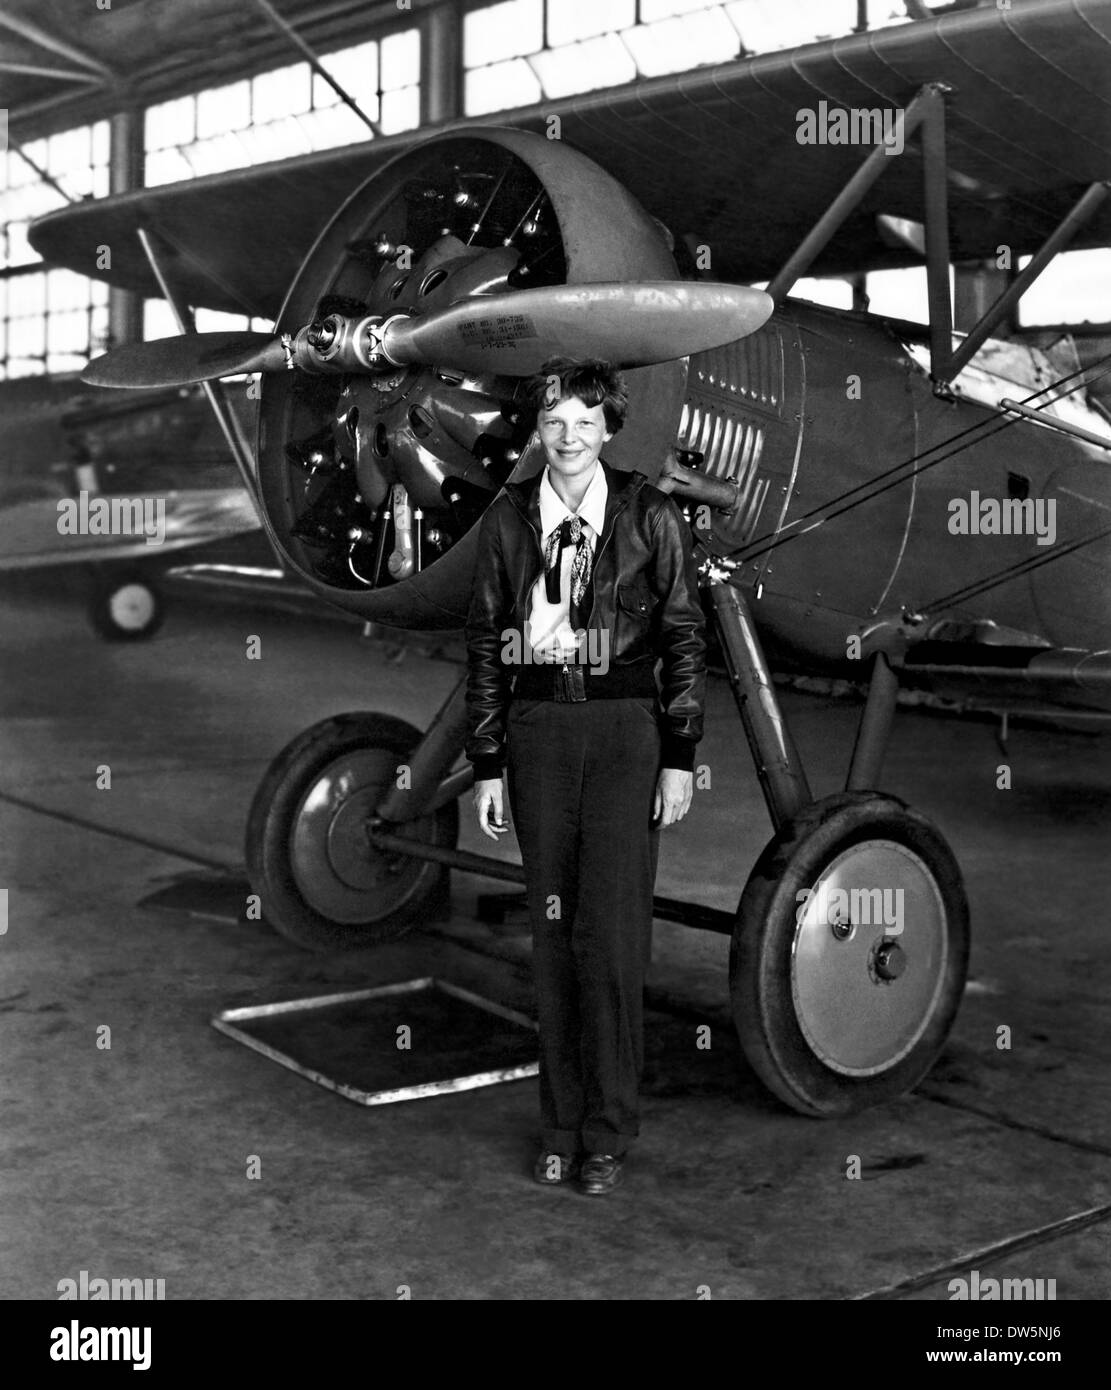 Pionnier de l'aviation Amelia Earhart pose fièrement avec son avion dans un hangar Le 30 juillet 1936. Amelia Earhart est la première femme aviateur de voler en solo à travers l'Océan Atlantique Banque D'Images